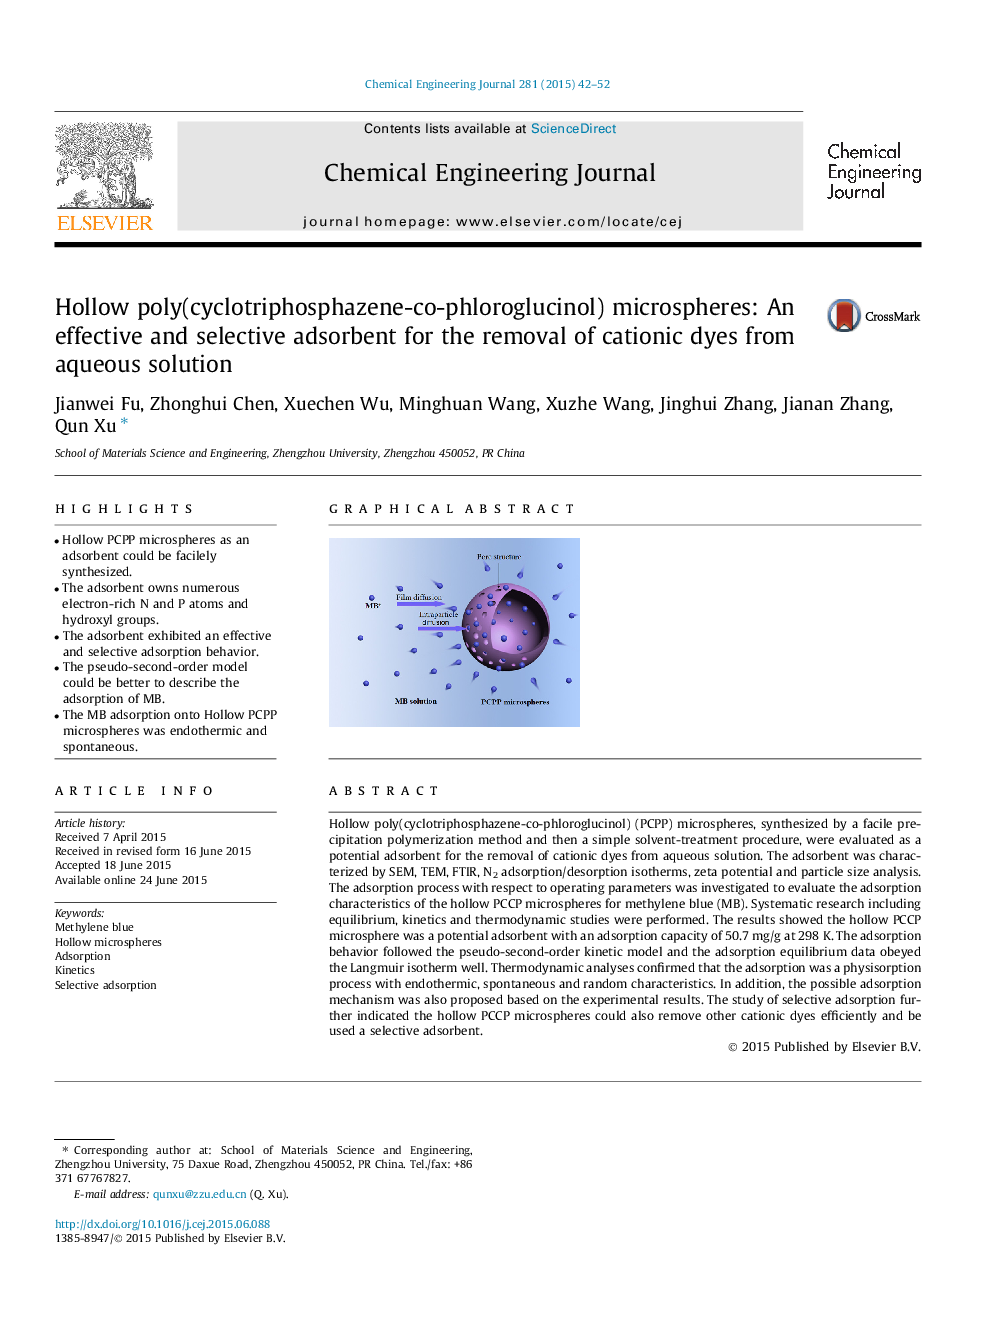 میکروسپرسهای پلی کربنات پلی کربنات (سیکلوتی فریسفسن کافلورگلوکینول): یک جاذب مؤثر و انتخابی برای حذف رنگهای کاتیونی از محلول آبی 